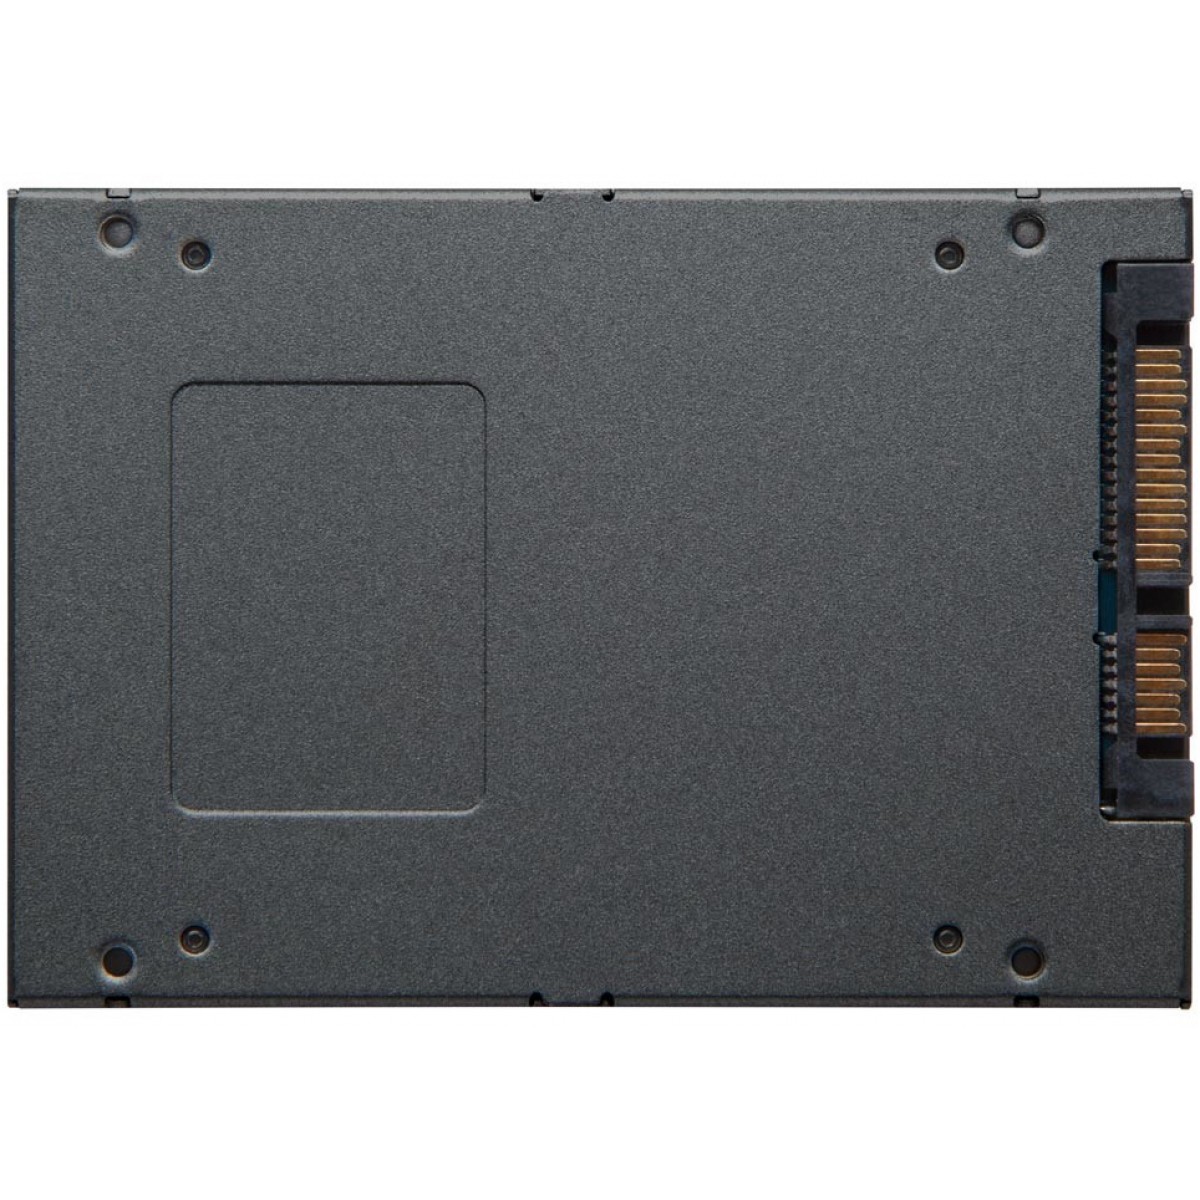 SSD Kingston A400, 960GB, Sata III, Leitura 500MBs e Gravação 450MBs, SA400S37/960G